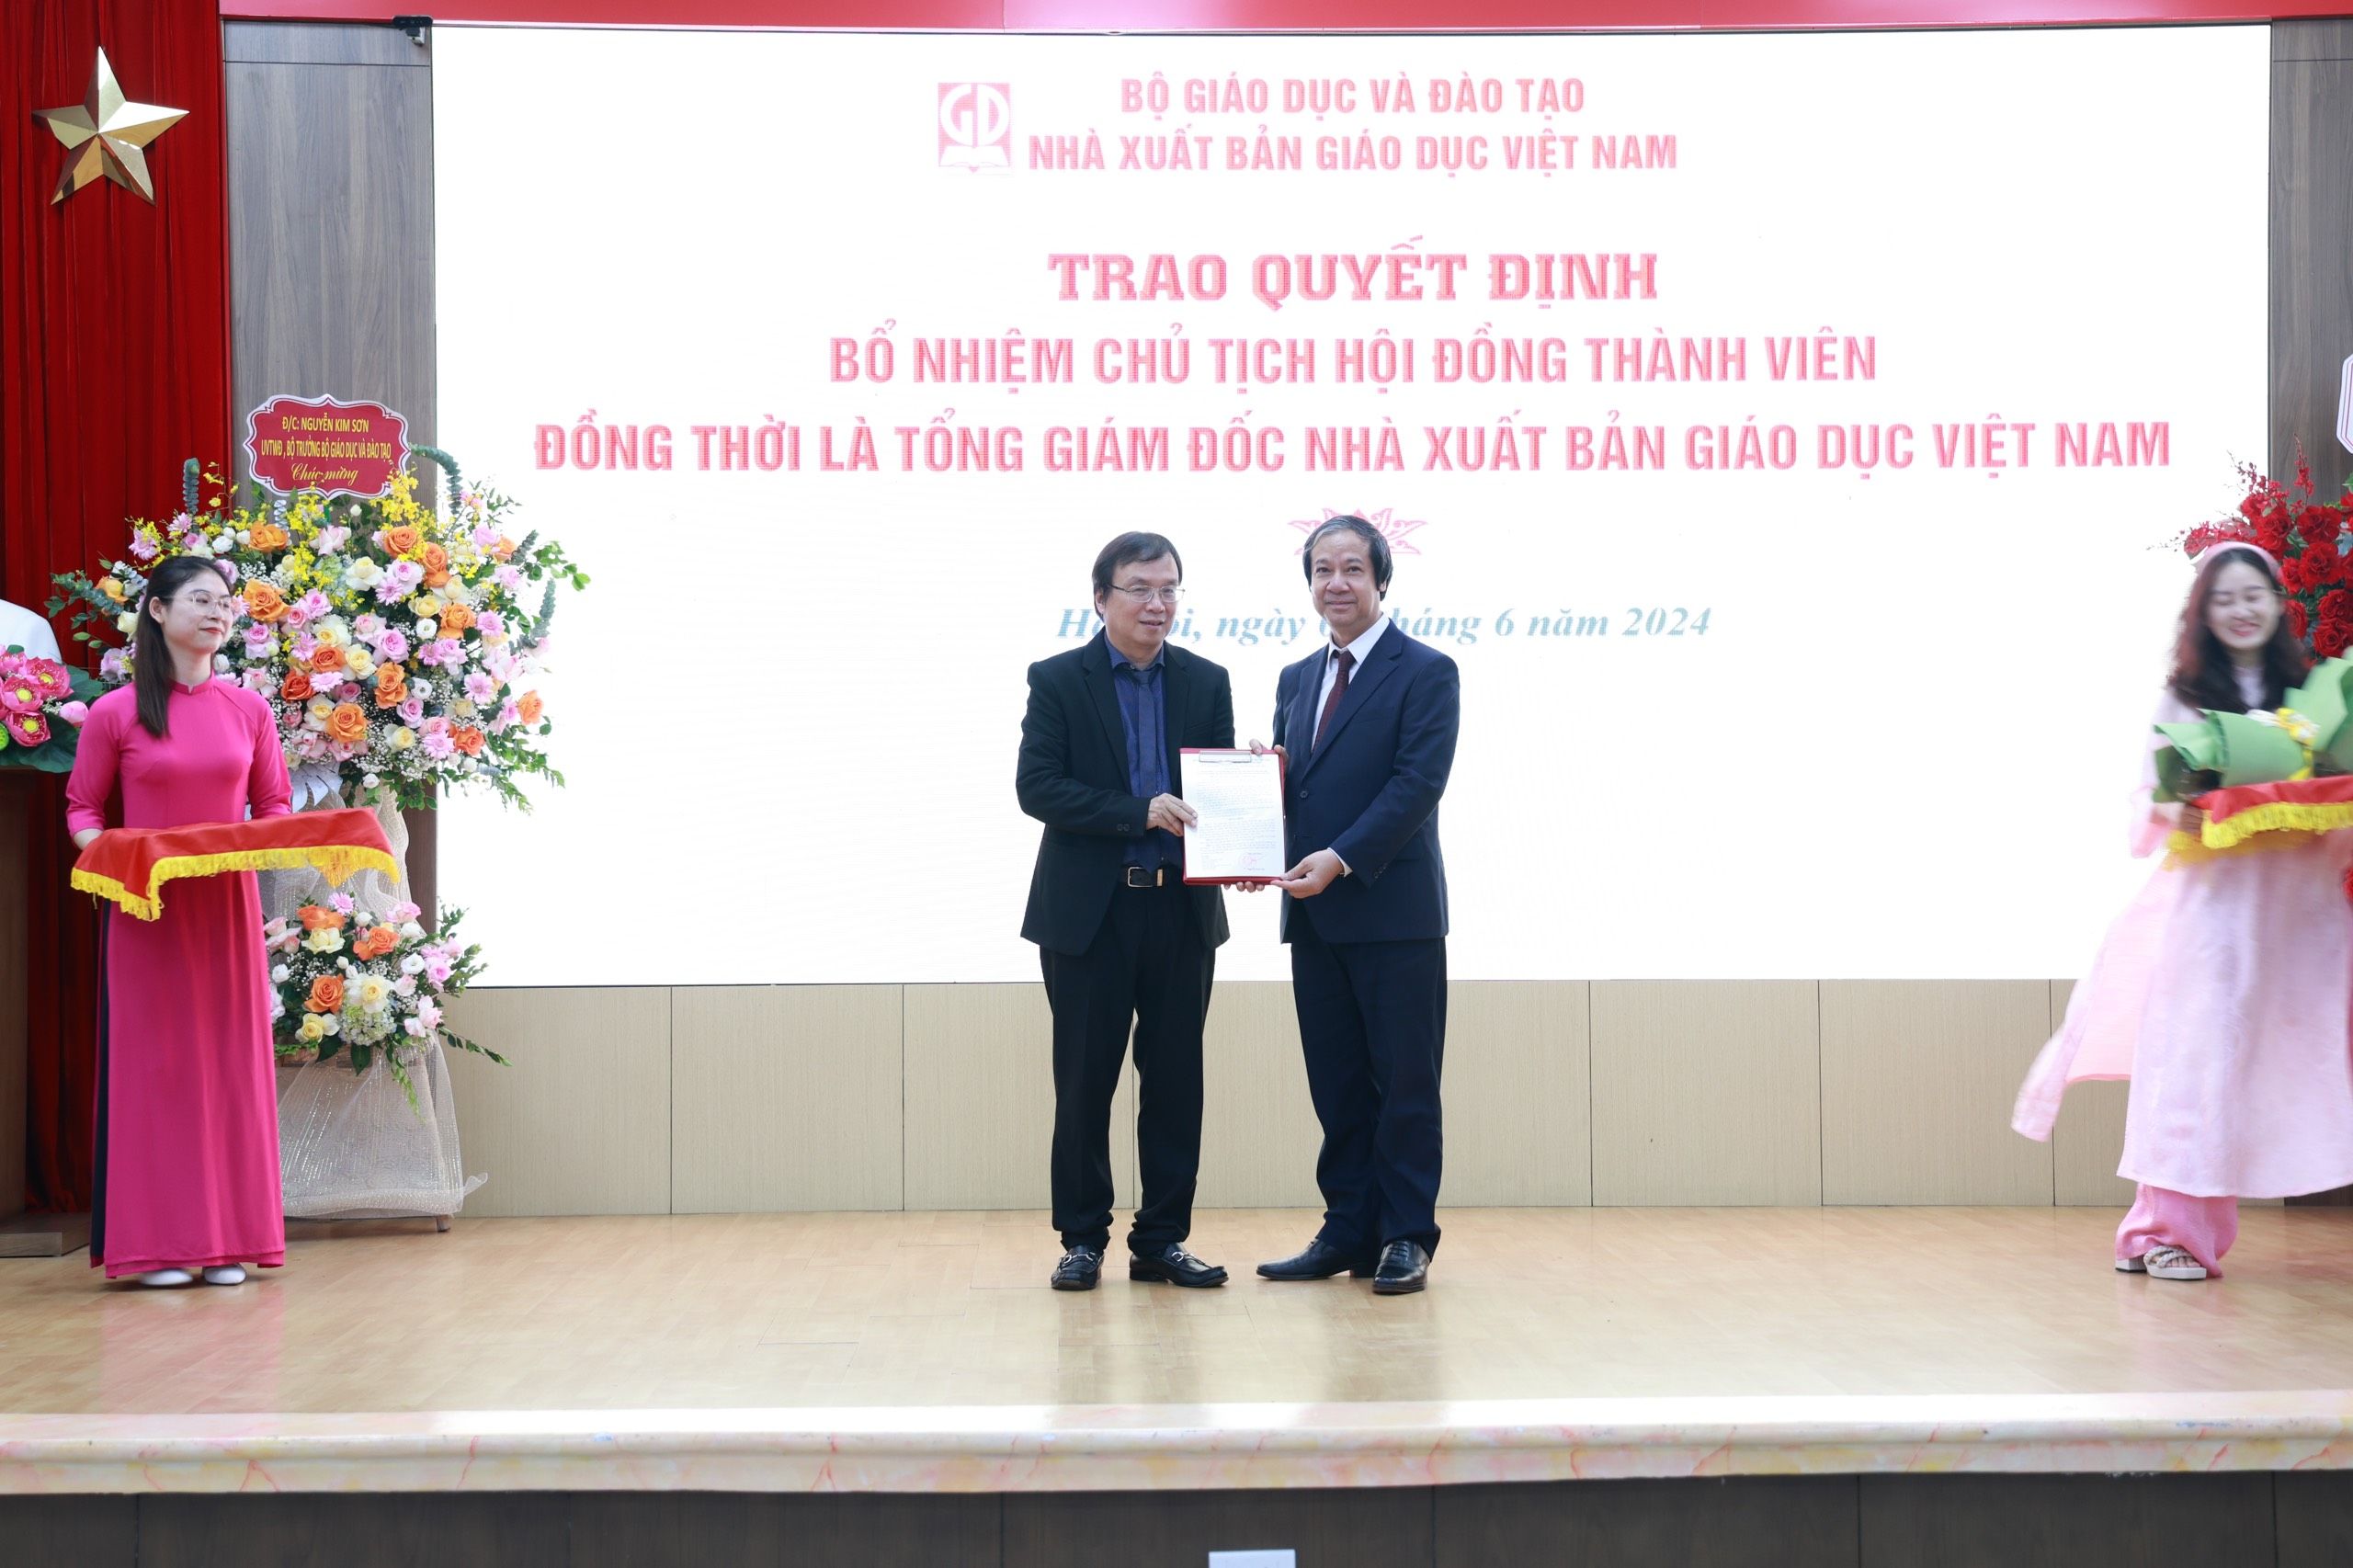 NXB Giáo dục Việt Nam cần có những đột phá, tiên phong trong chặng đường đổi mới